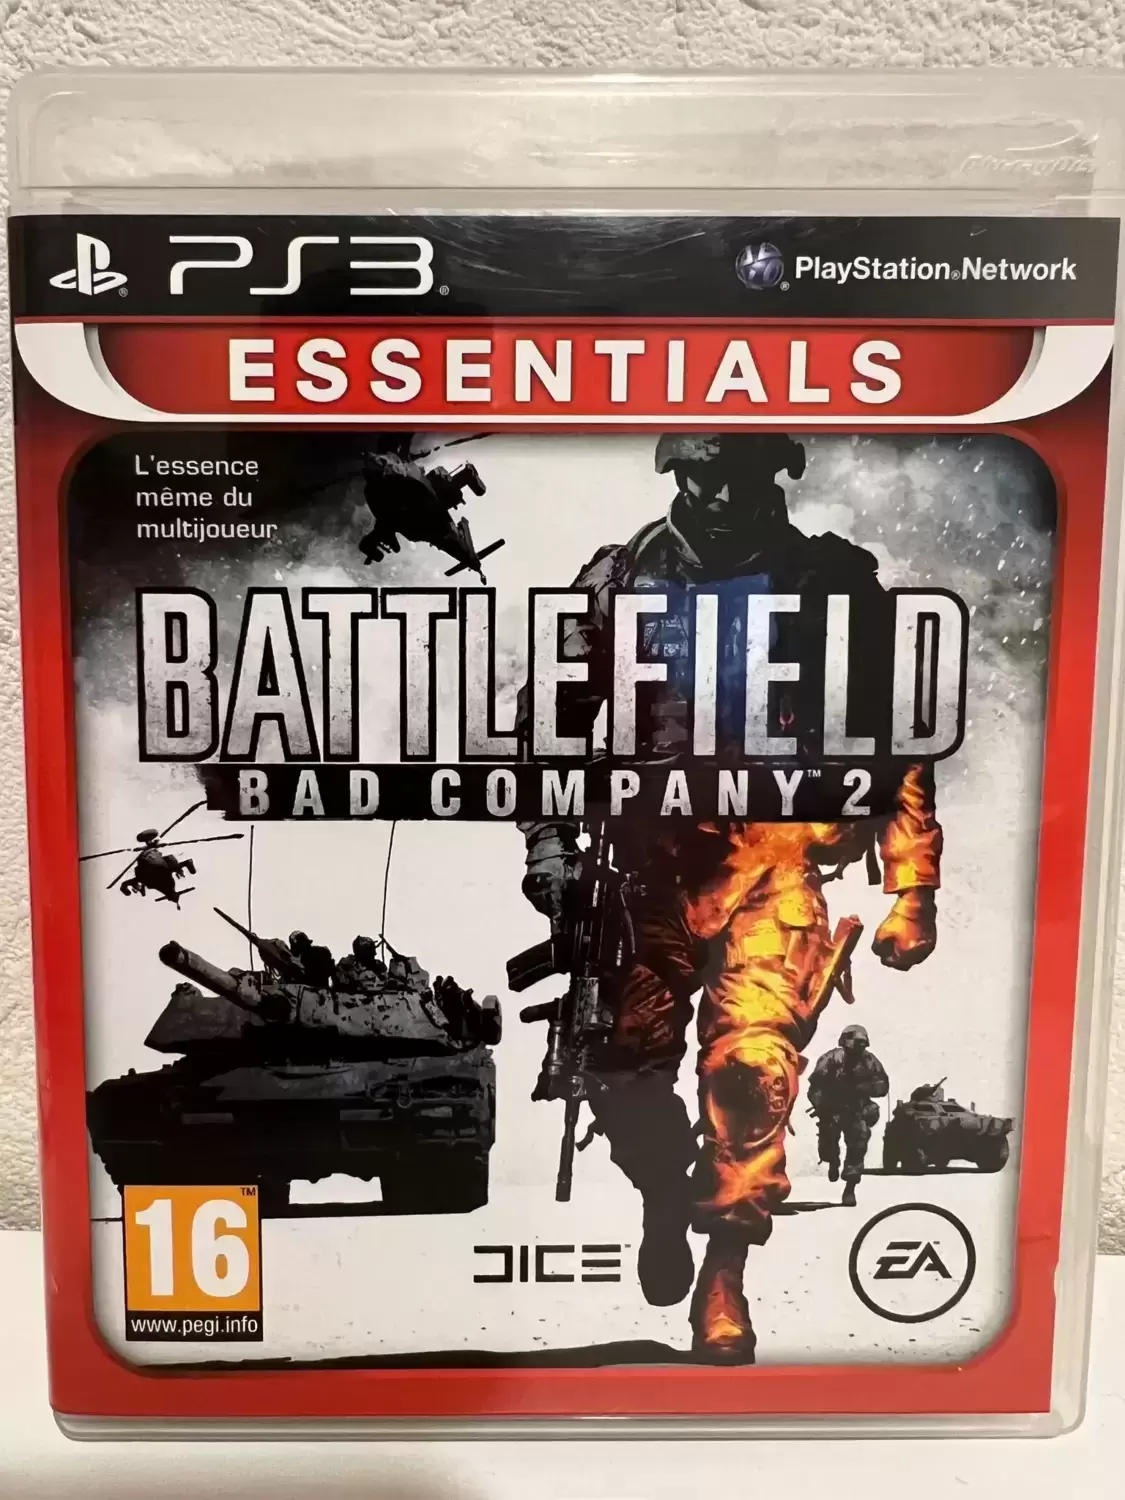 PS3 Games - Battlefield : Bad Company 2 - Essentials